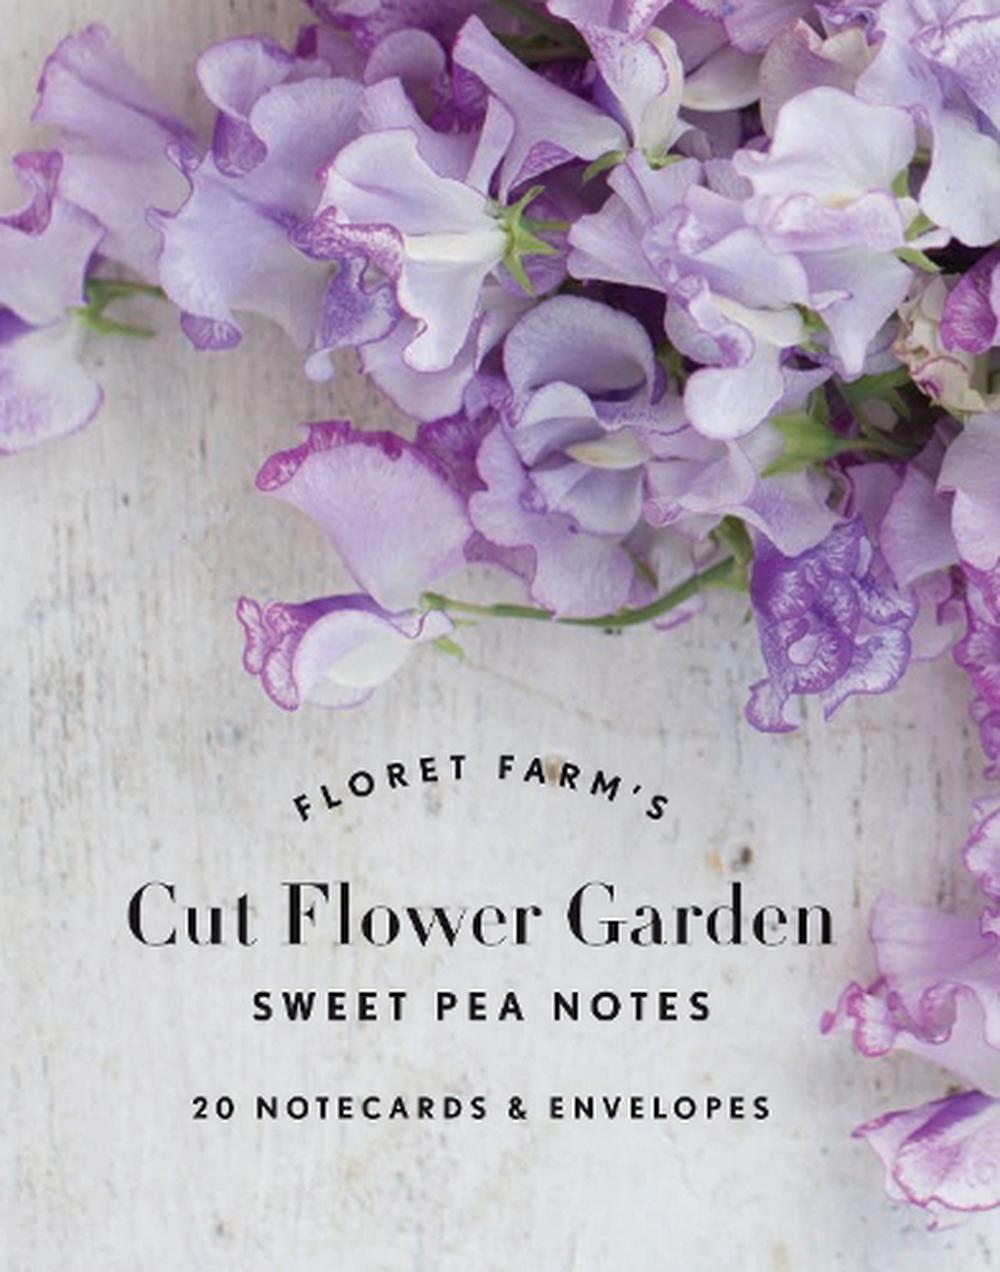 floret farms cut flower garden 2020 planner erin benzakein